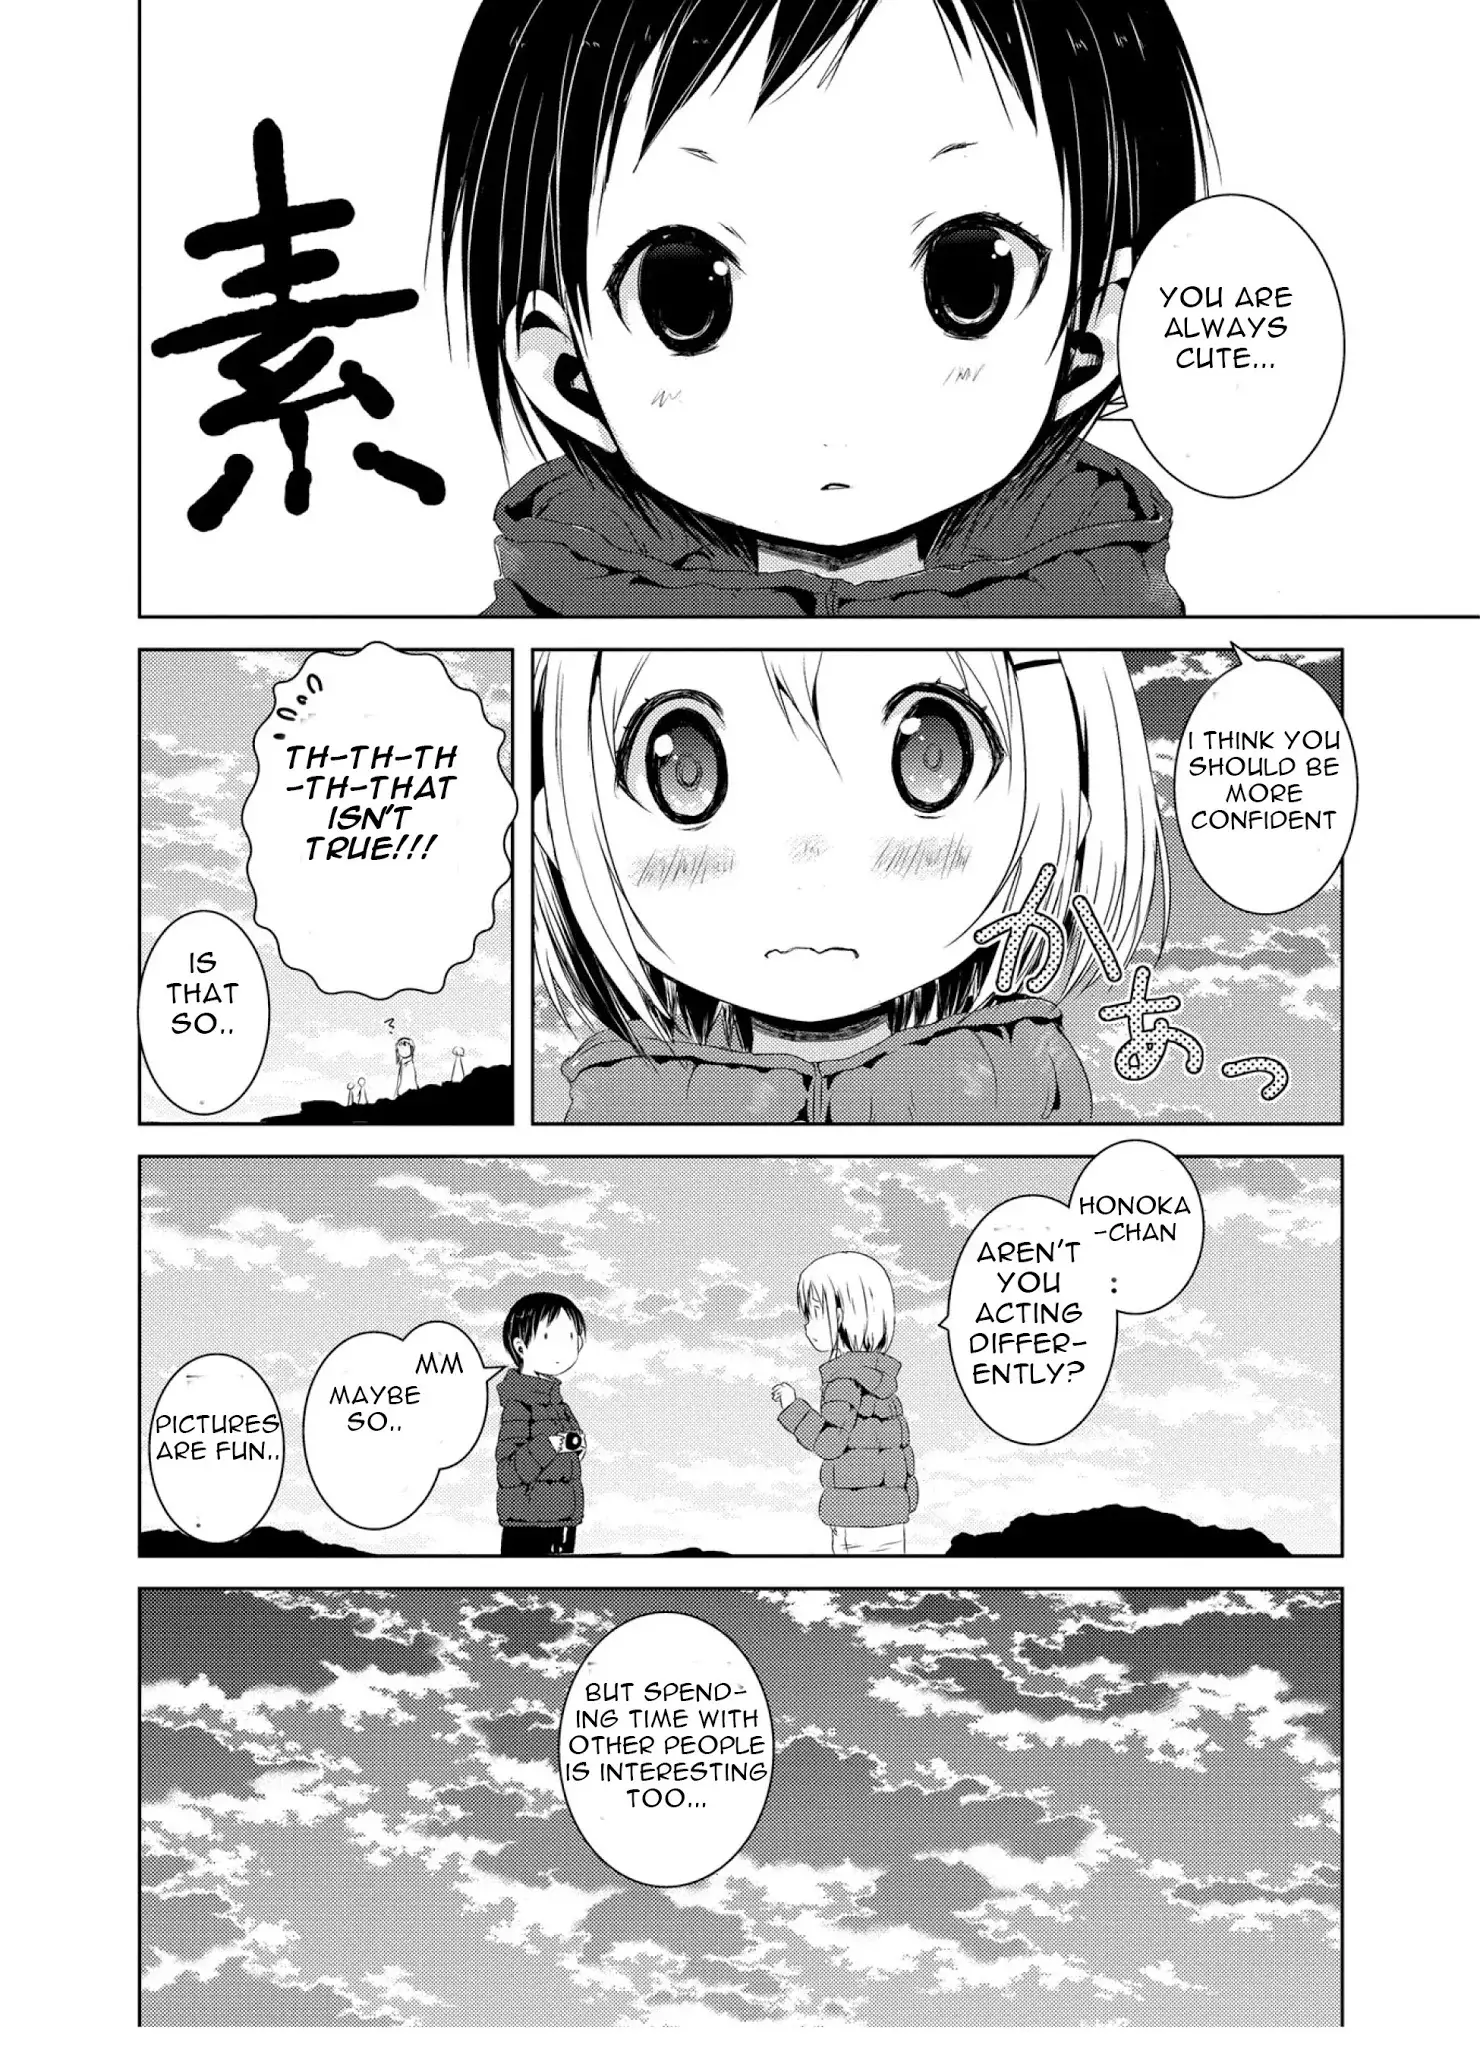 Yama No Susume - 42 page 11